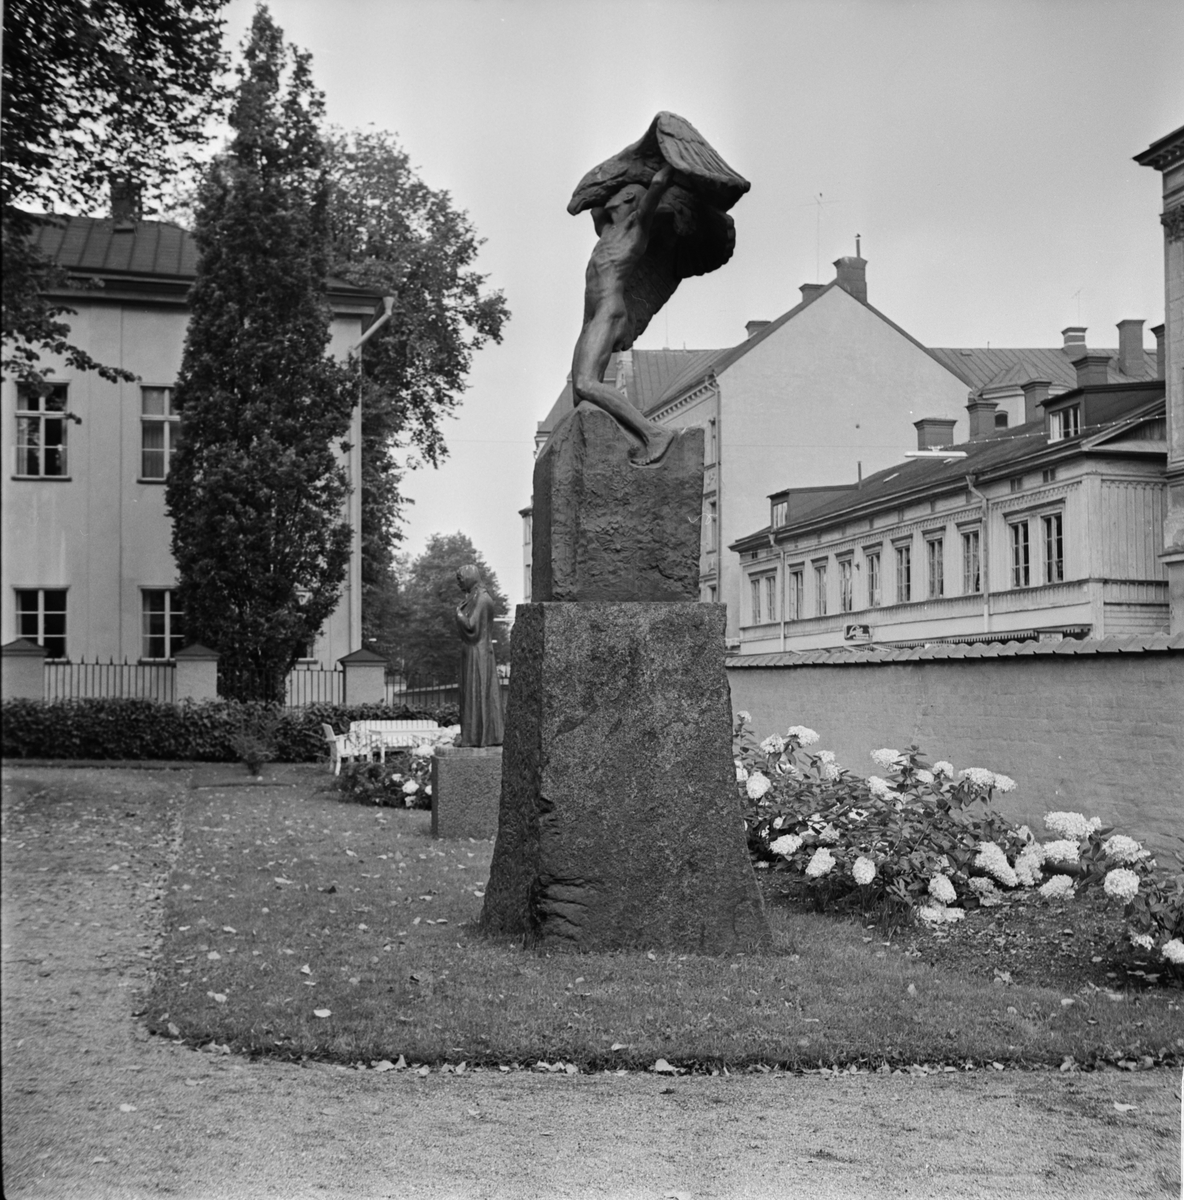 Statyerna Mor av Carl Eldh och Vingarna av Carl Milles vid Uplands Nation, S:t Larsgatan, Uppsala 1957